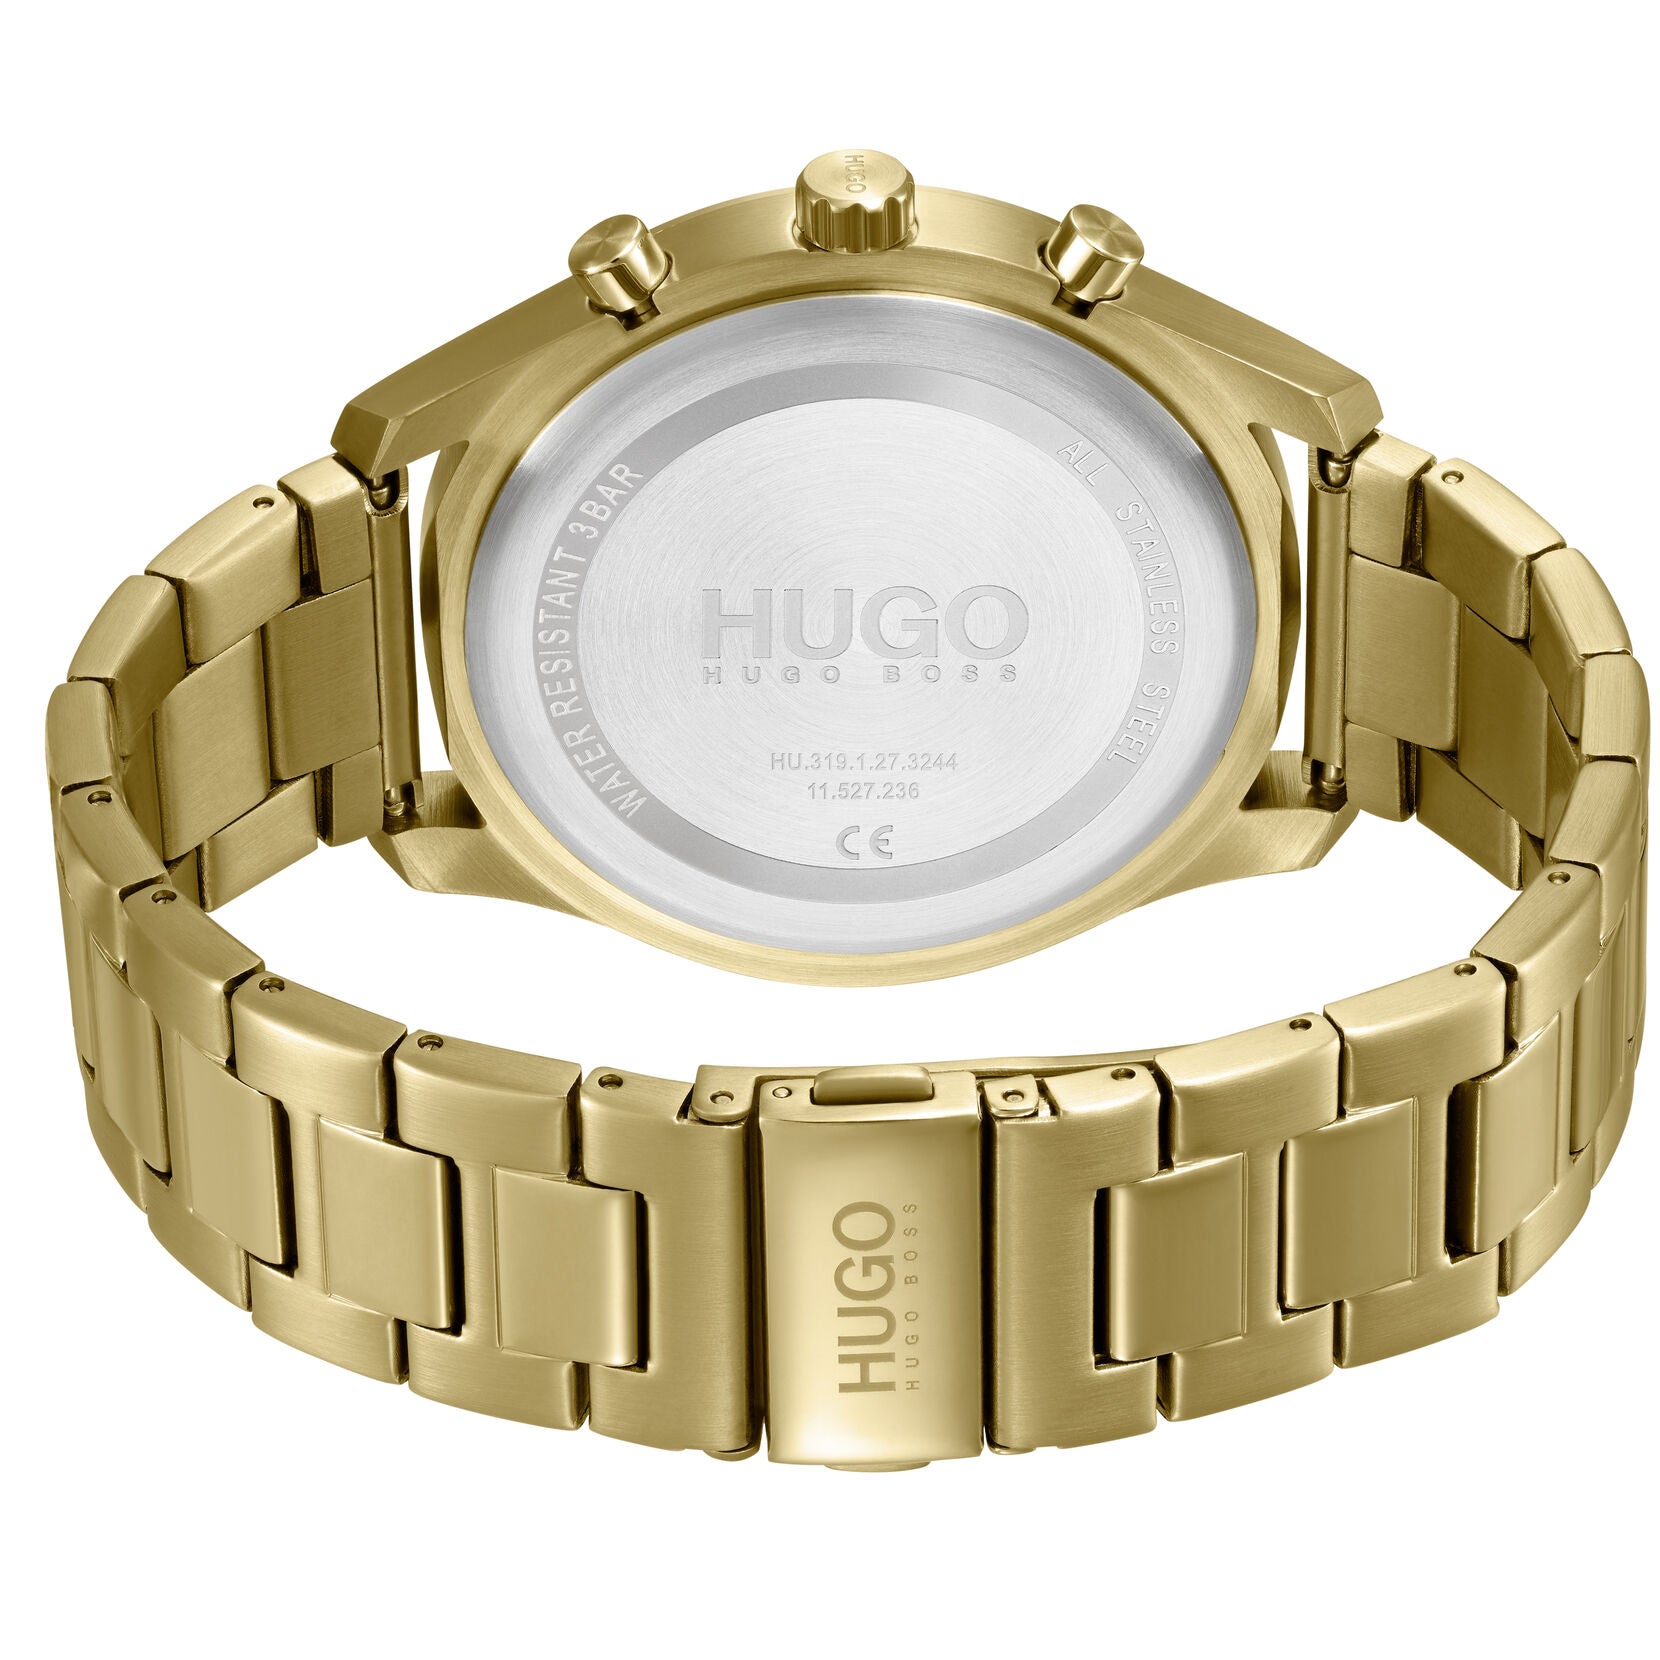 Hugo Boss Hugo Boss #Chase Quartz Dial Men's Watch 1530164